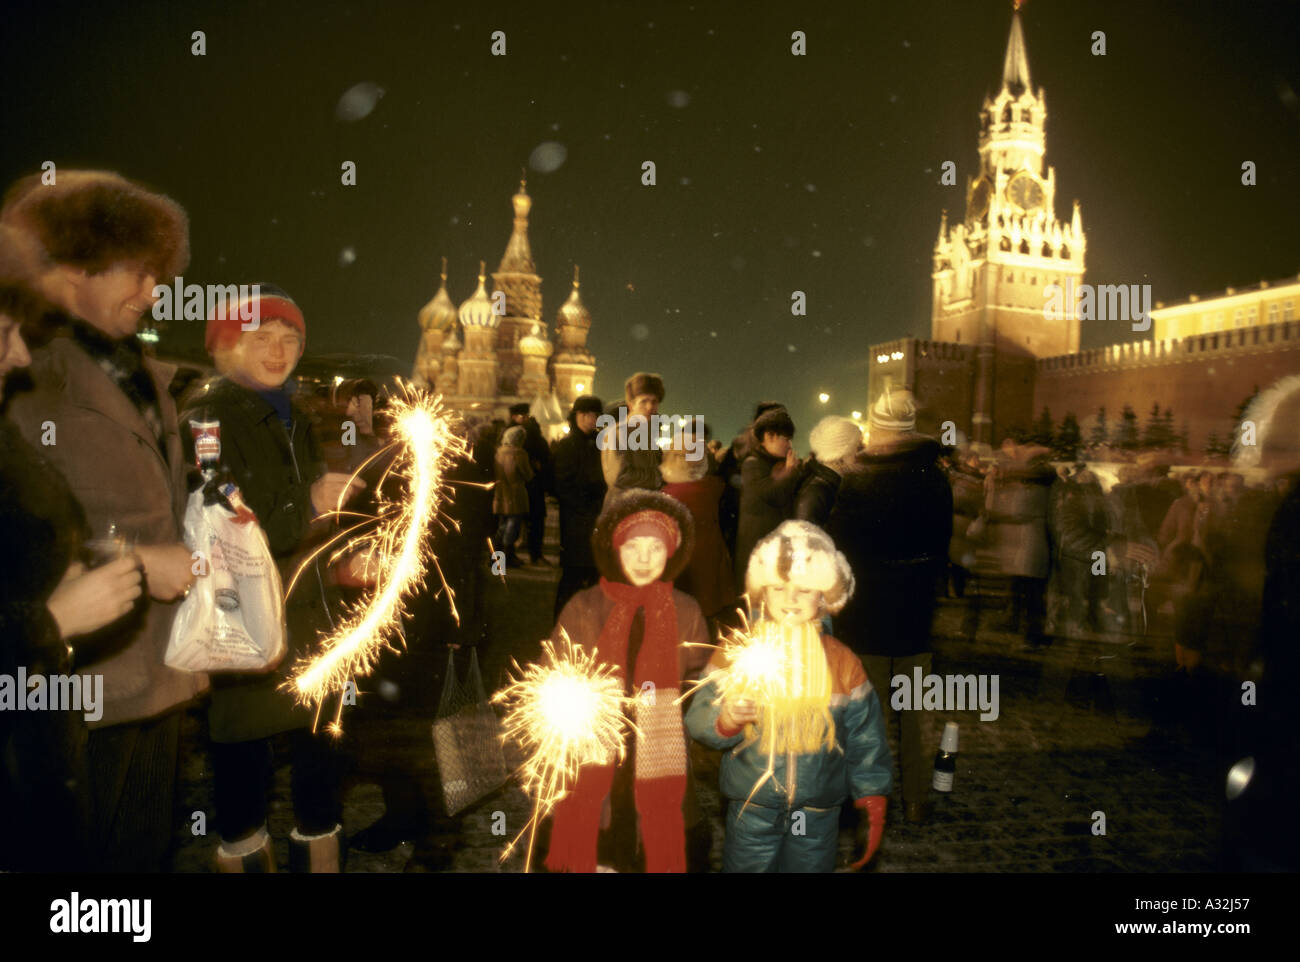 Moscou Saint-Pétersbourg deux enfants agitant allumé cierges parmi la foule celebrating new year s day à la place rouge Moscou 1983 Banque D'Images